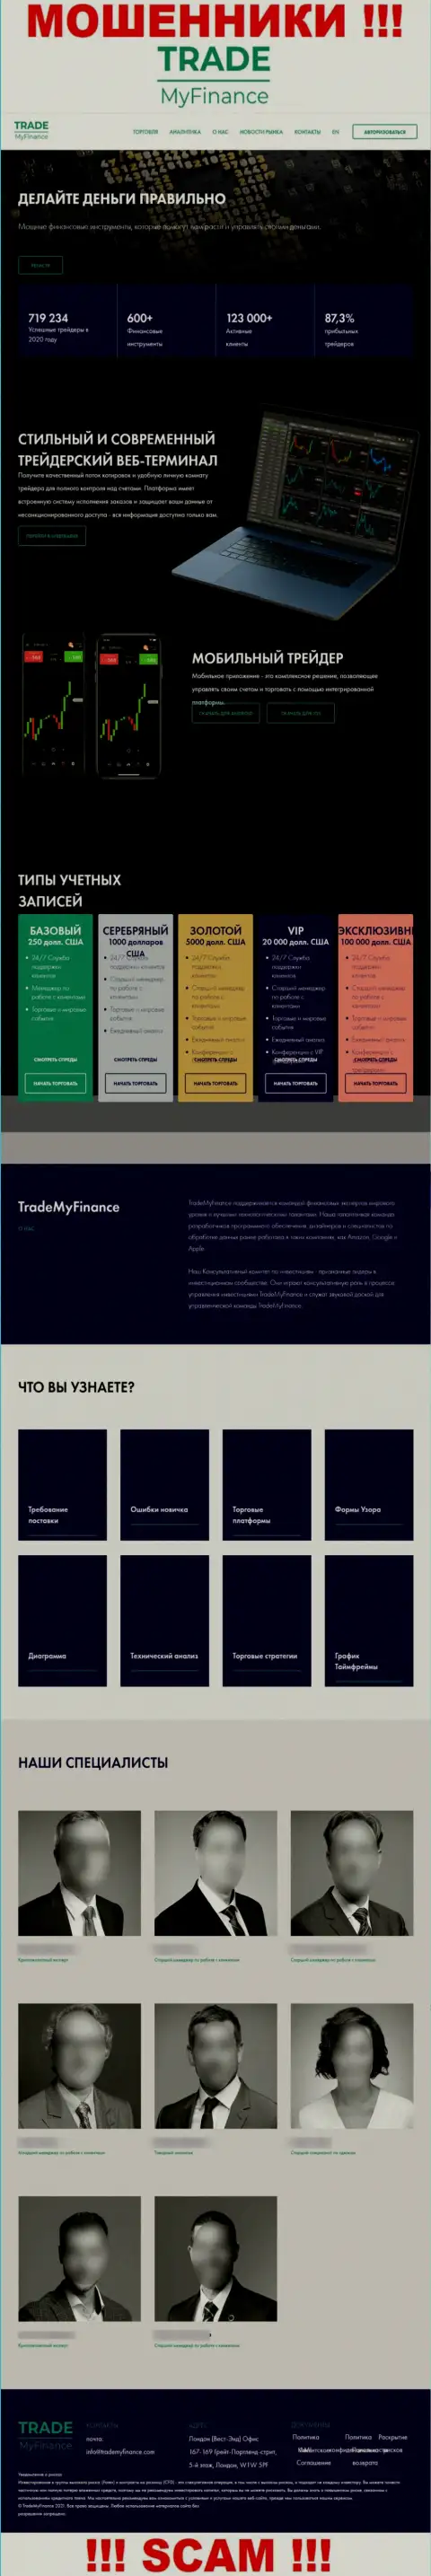 Не хотите оказаться пострадавшими от неправомерных уловок мошенников - не заходите на веб-сервис компании TradeMyFinance - TradeMyFinance Com